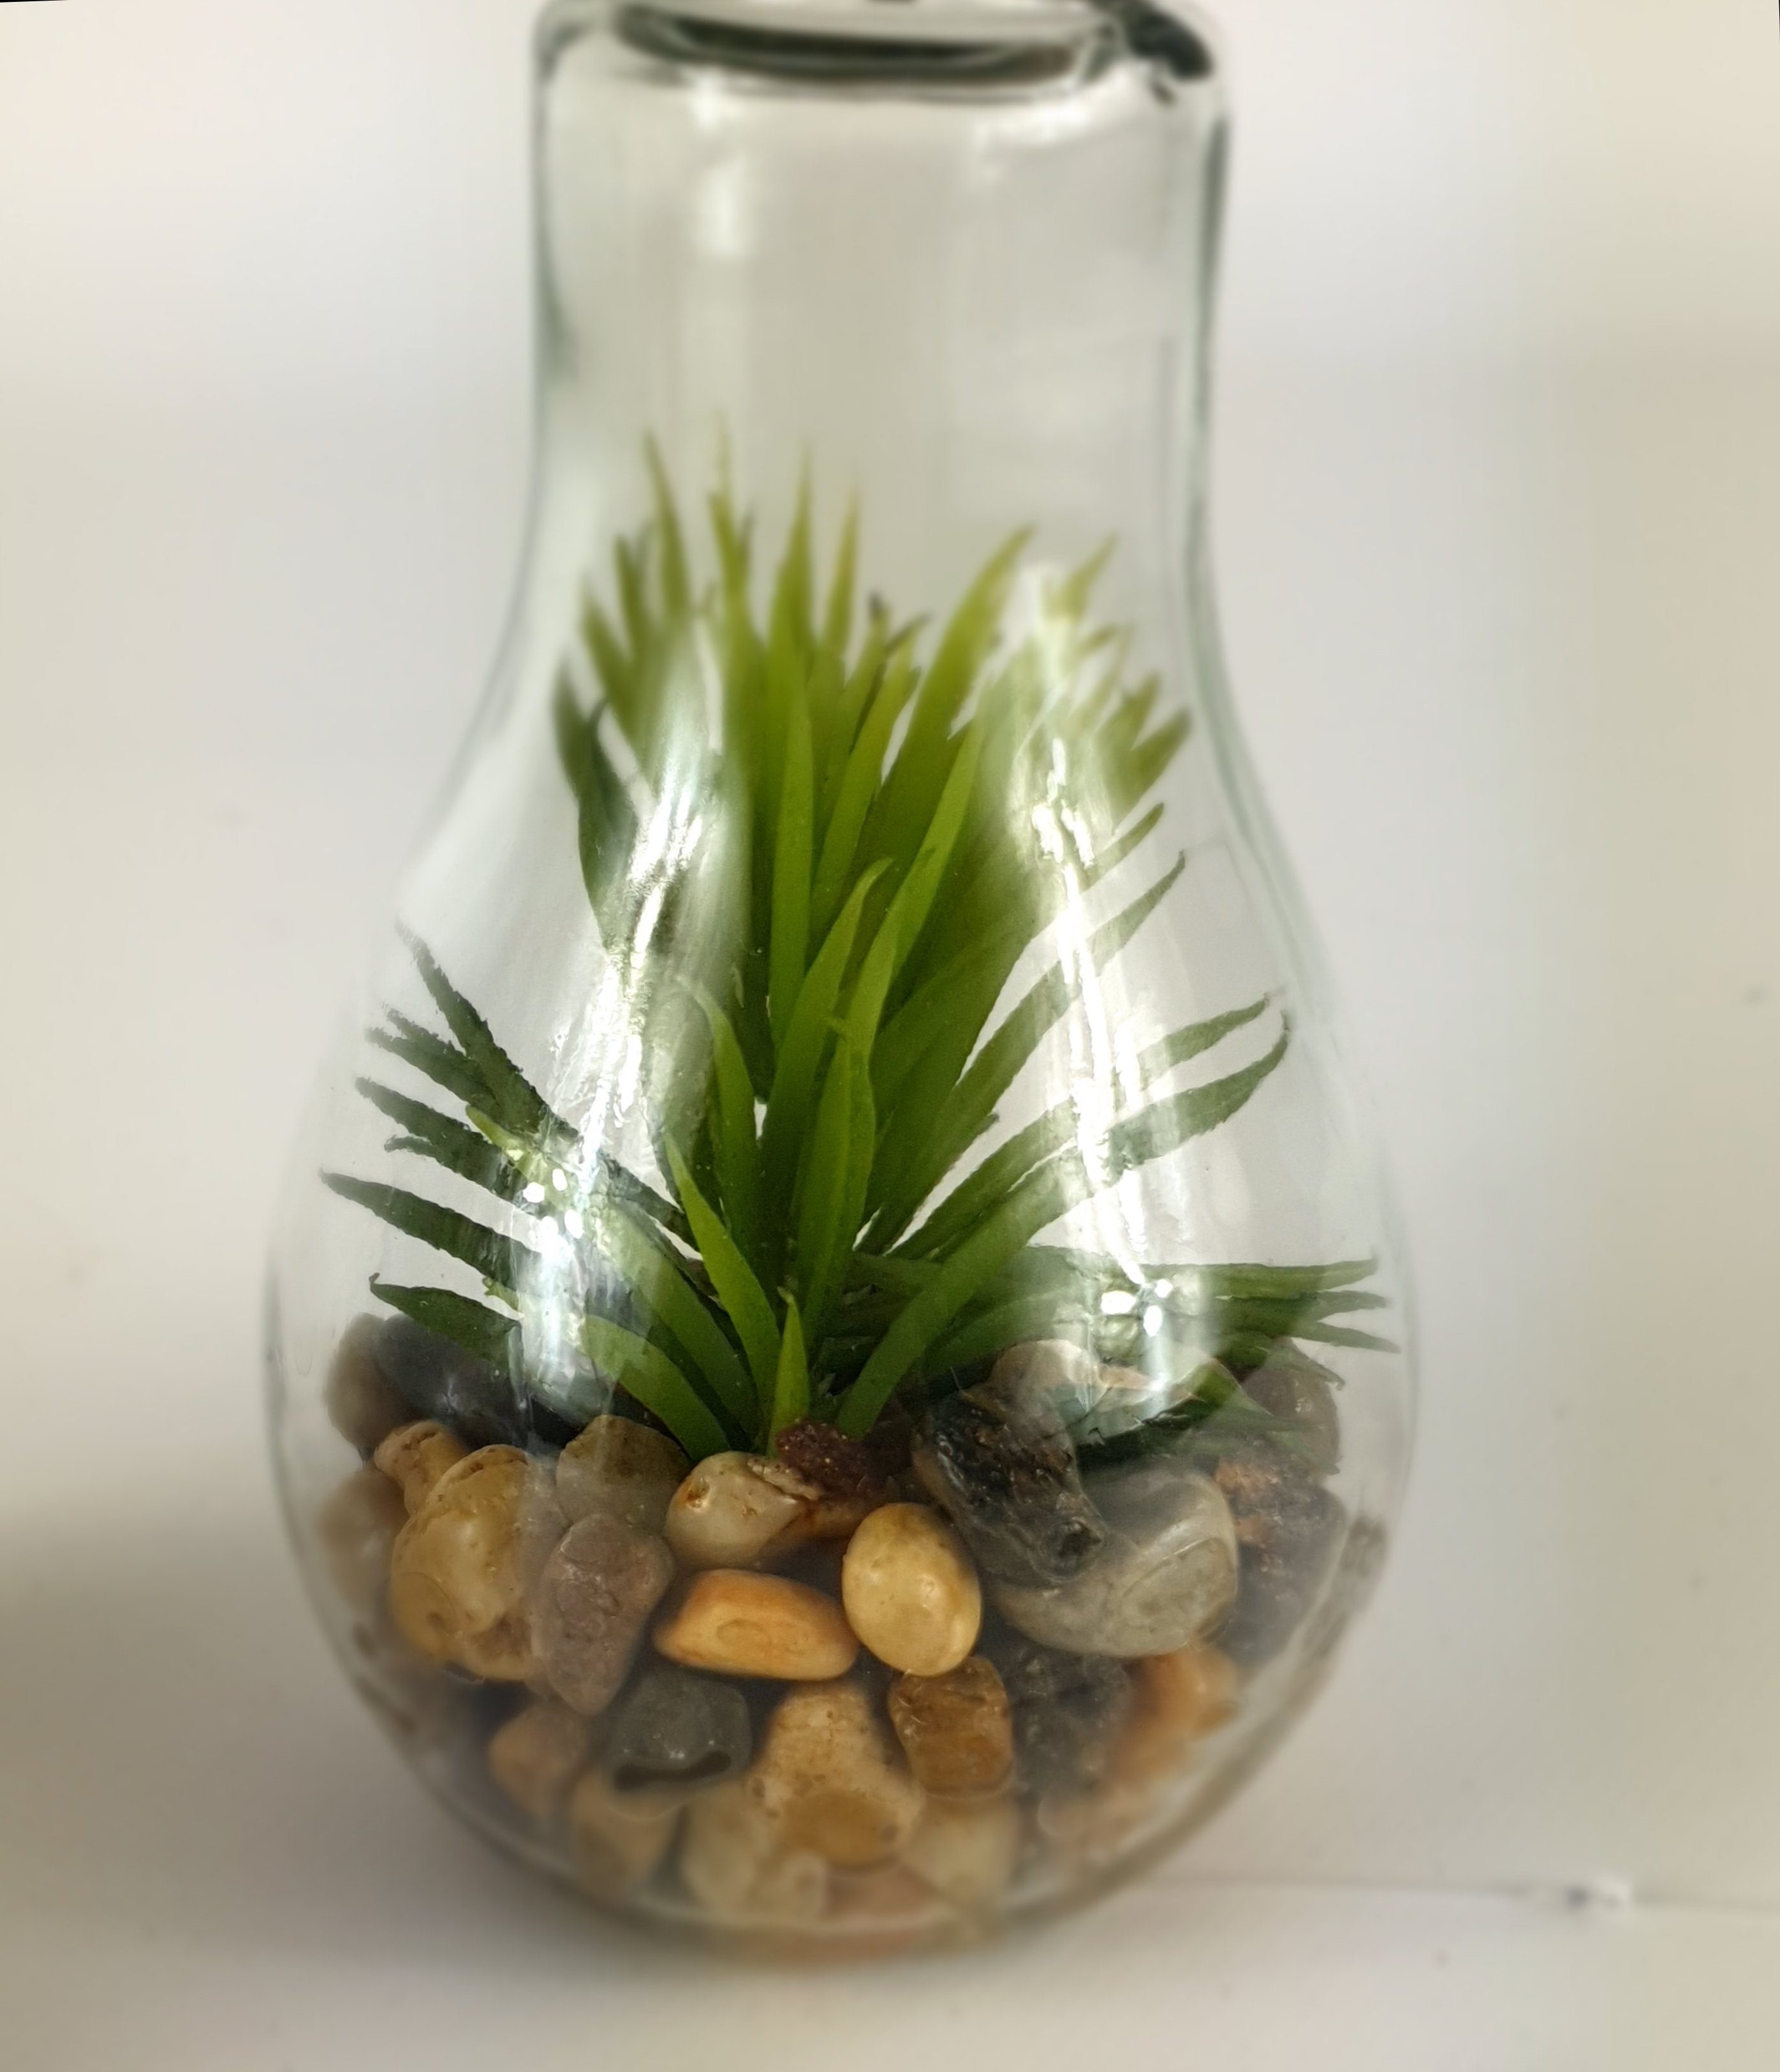 Thomas Philipps Kunstpflanze, Dekolicht Hängelampe warmweiß LED Dekolampe LED Glas Glühbirne Beleuchtung Deko